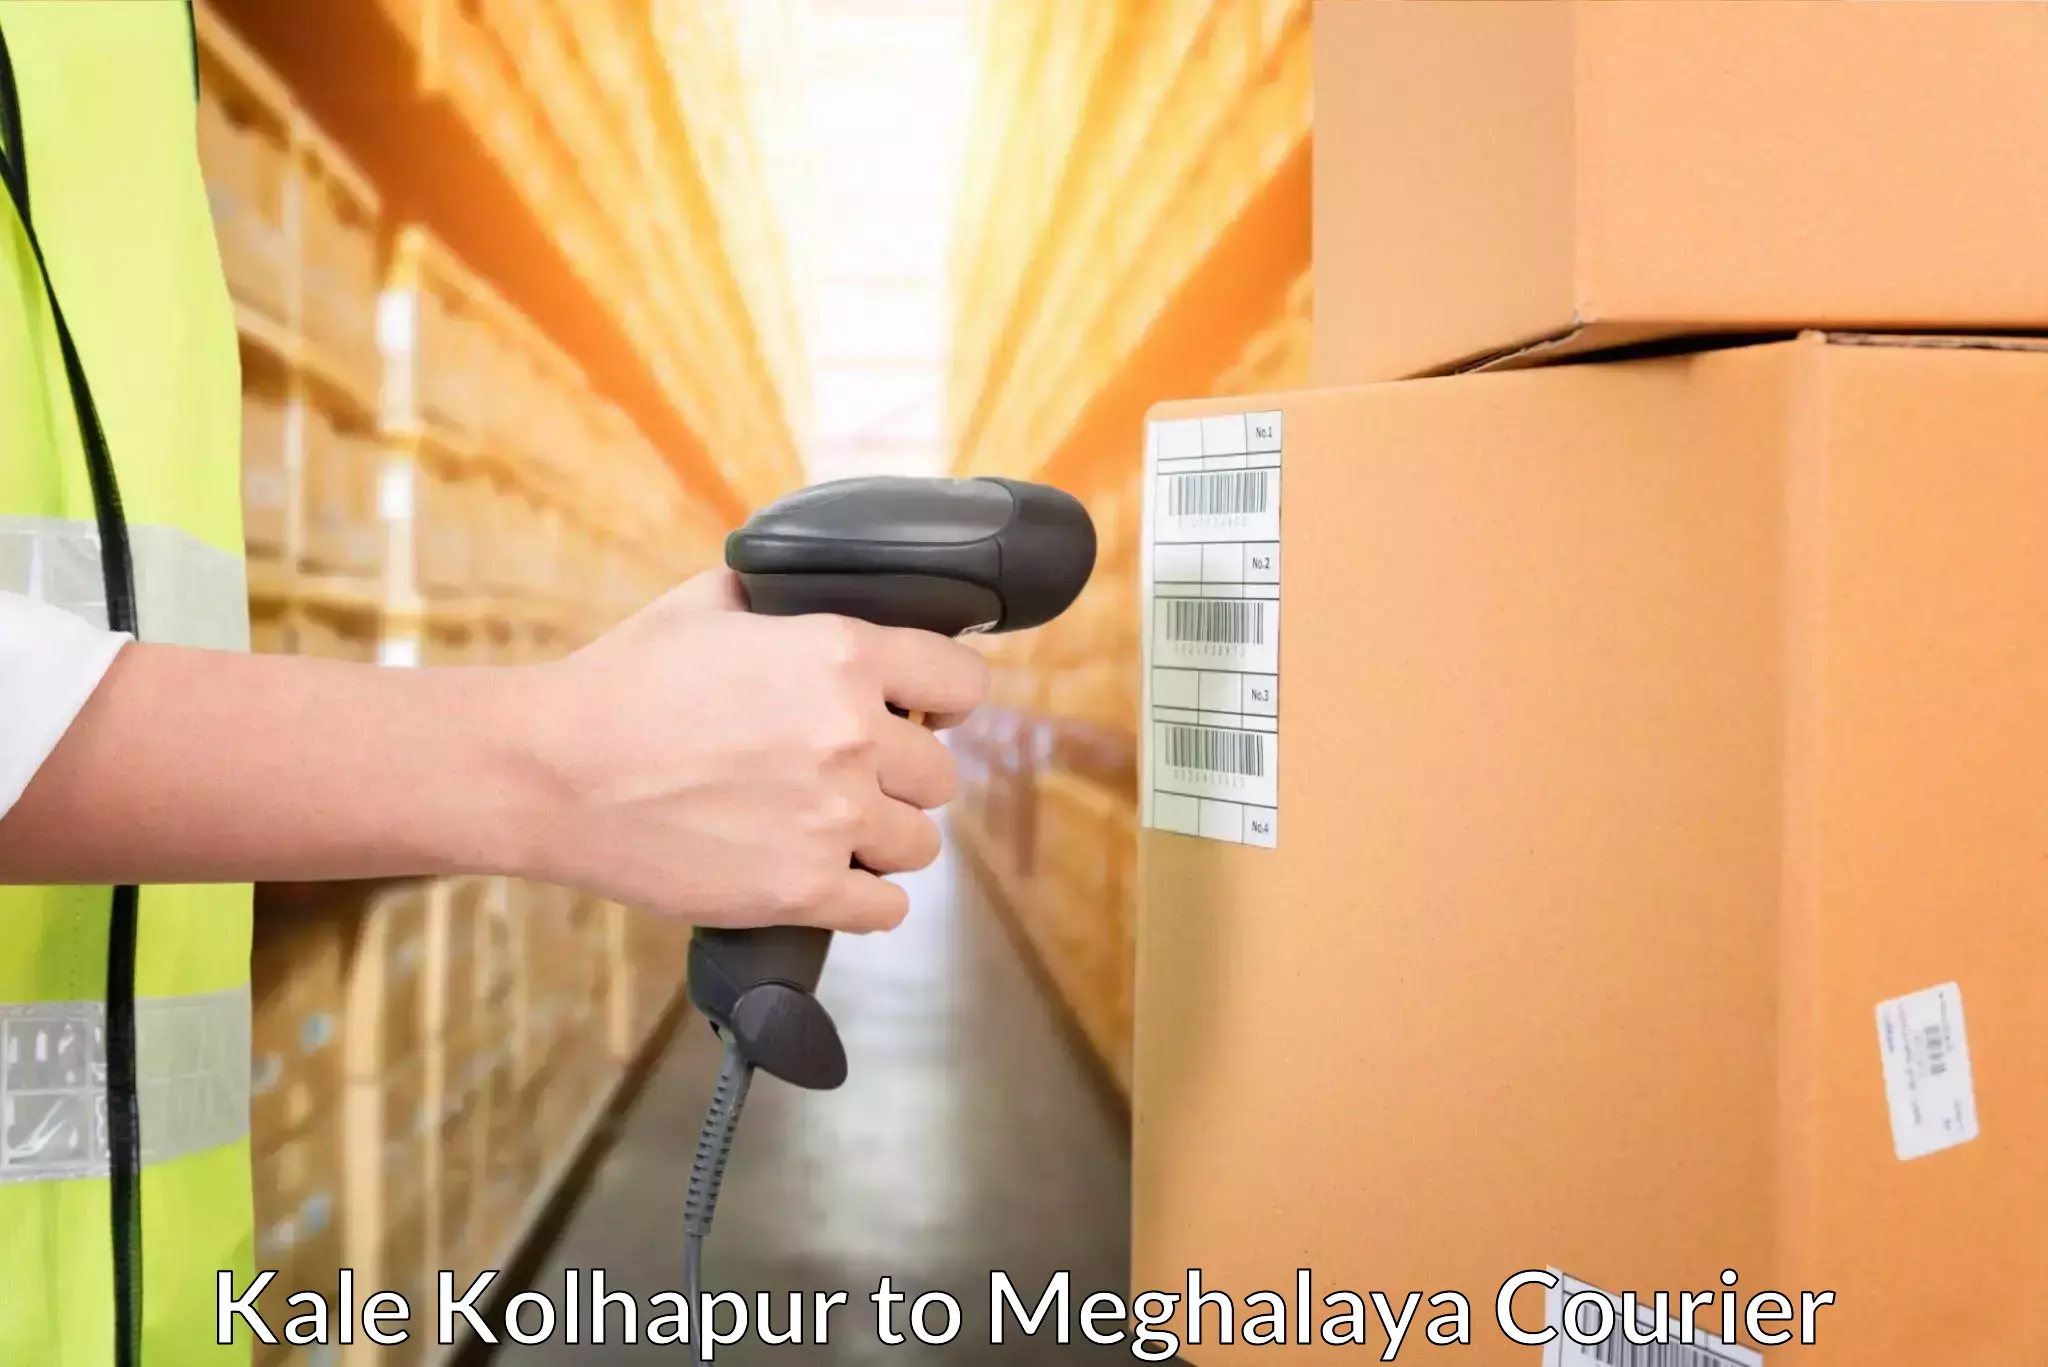 Regular parcel service Kale Kolhapur to Meghalaya